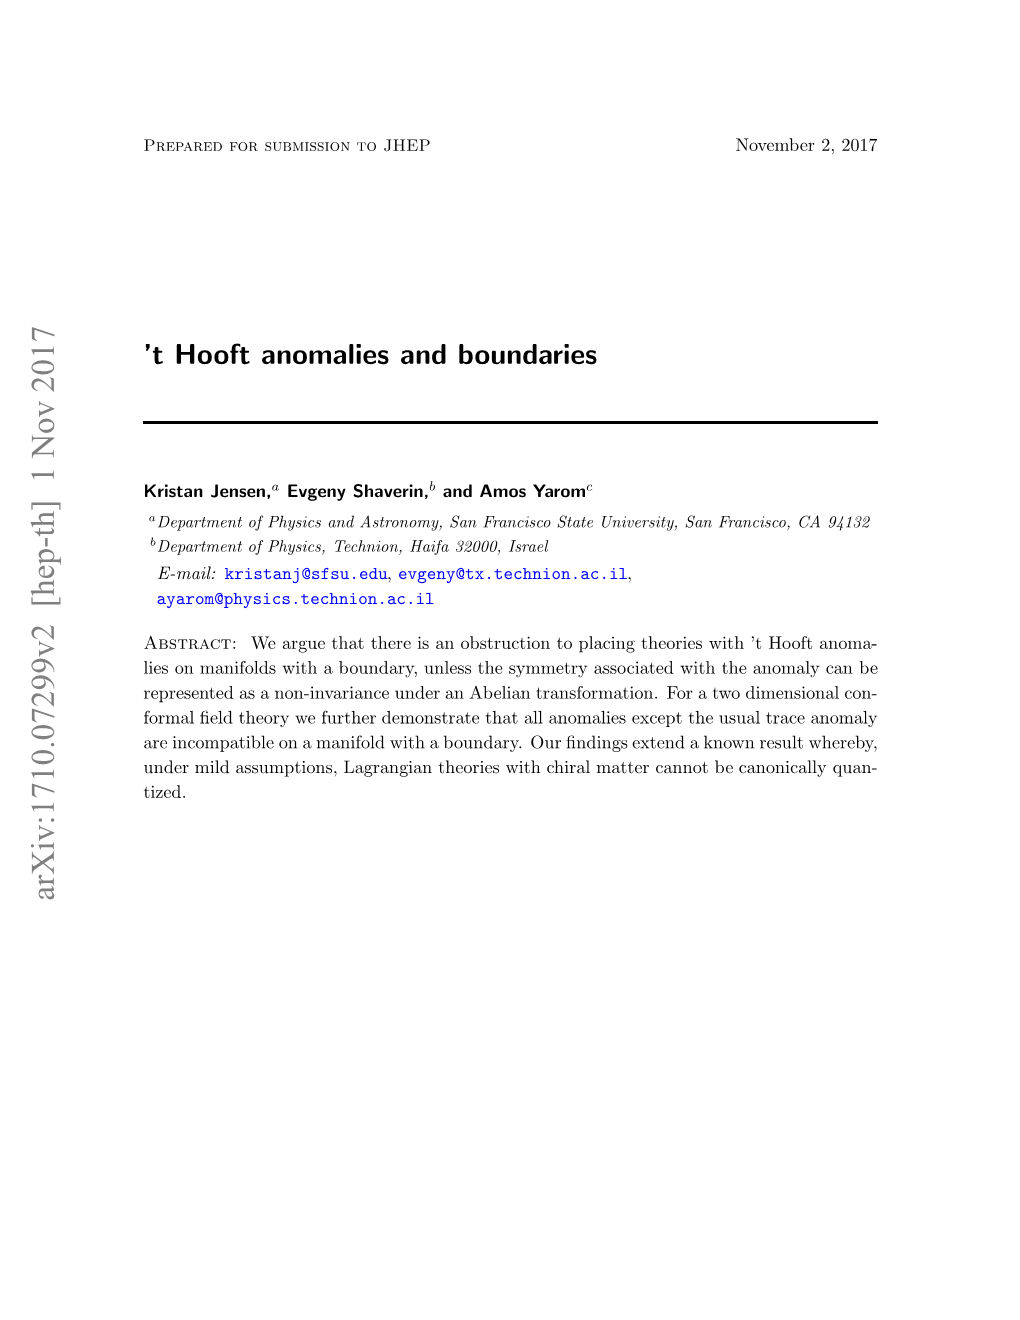 T Hooft Anomalies and Boundaries